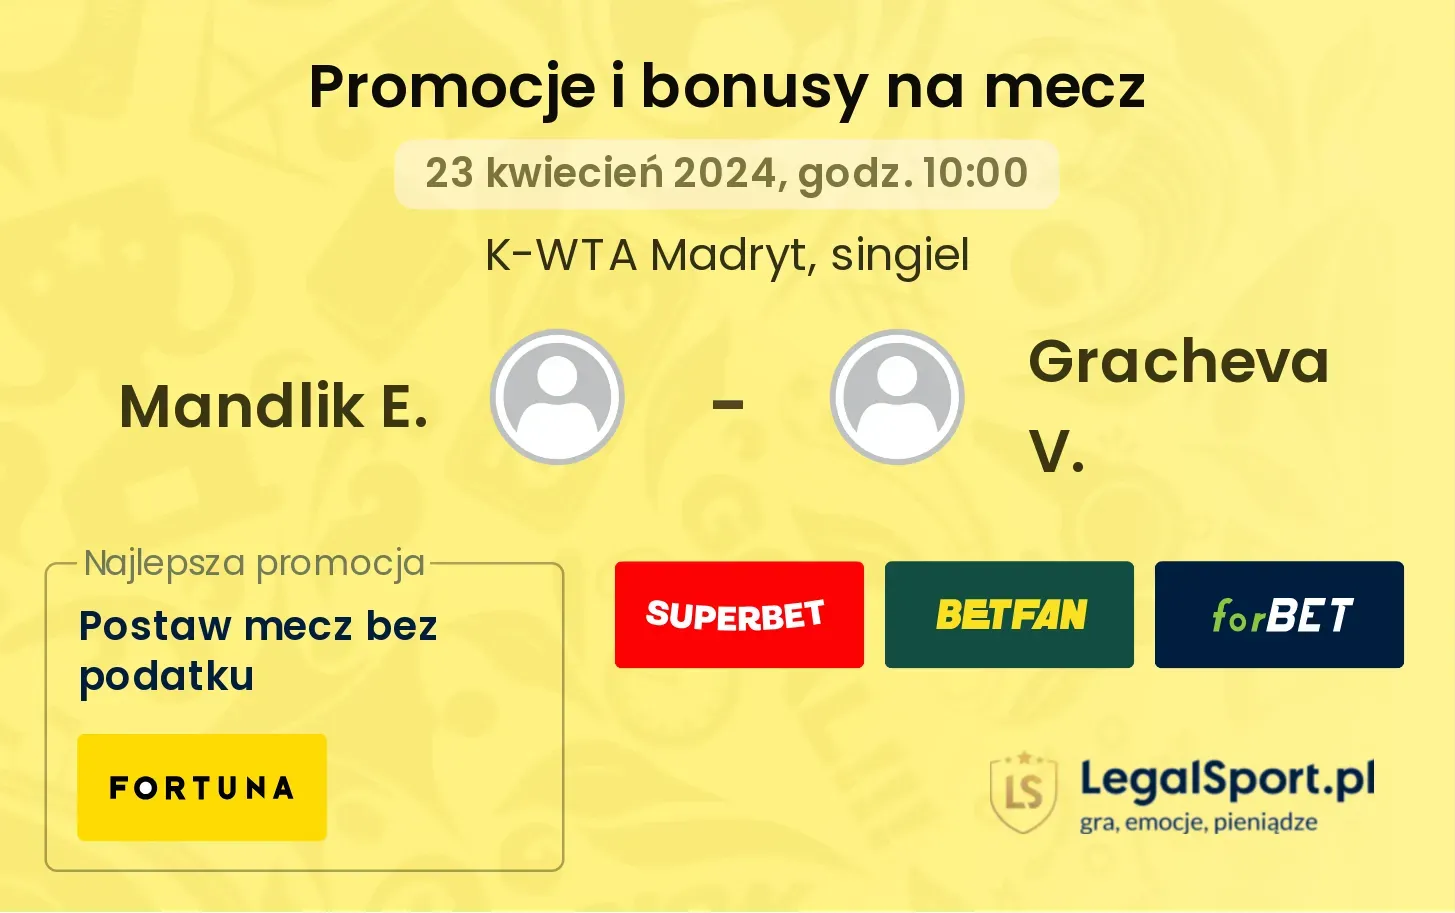 Mandlik E. - Gracheva V. promocje bonusy na mecz